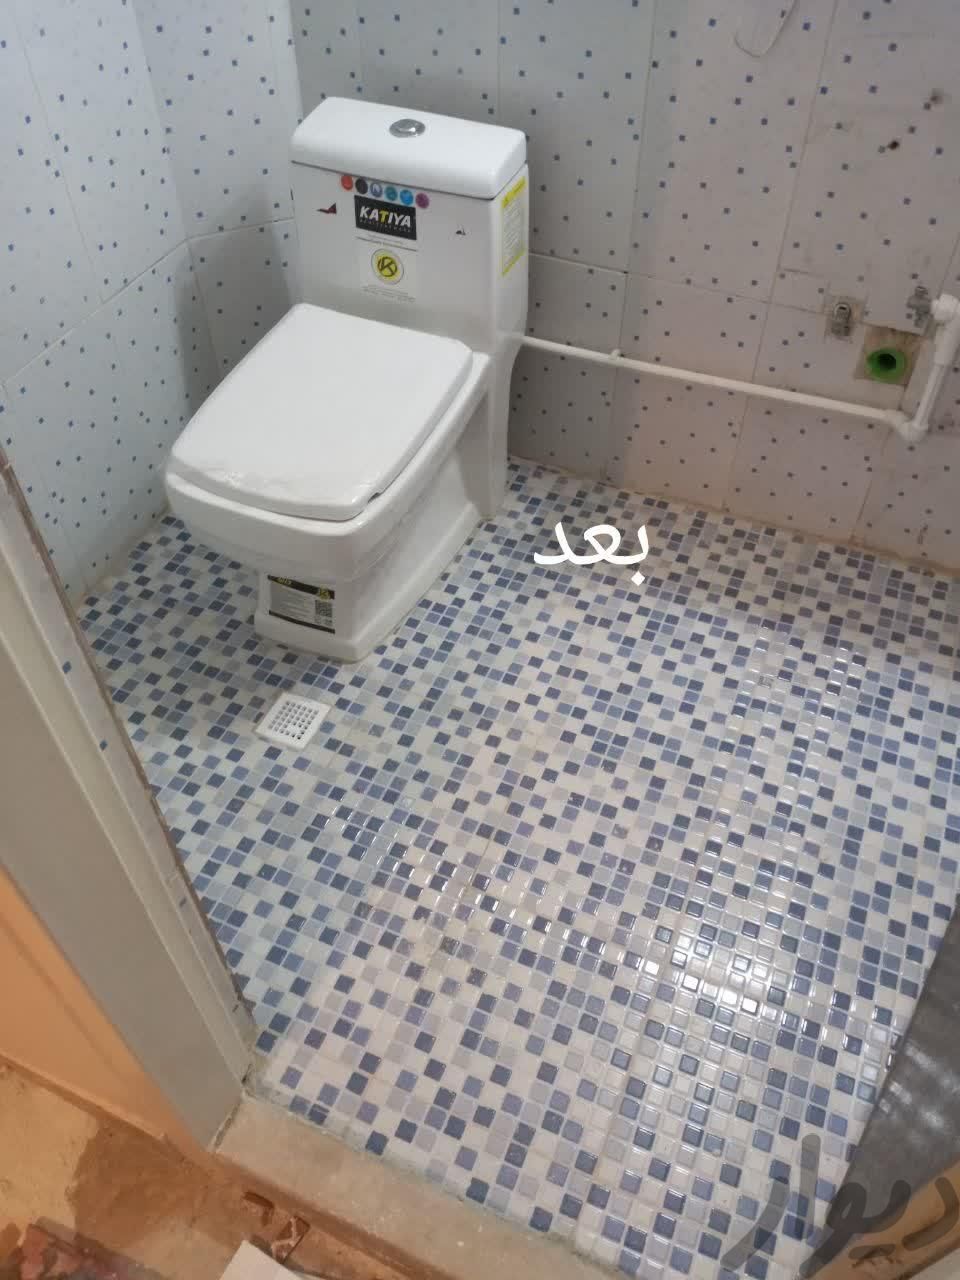 نصب توالت وسرویس فرنگی وشیر آلات